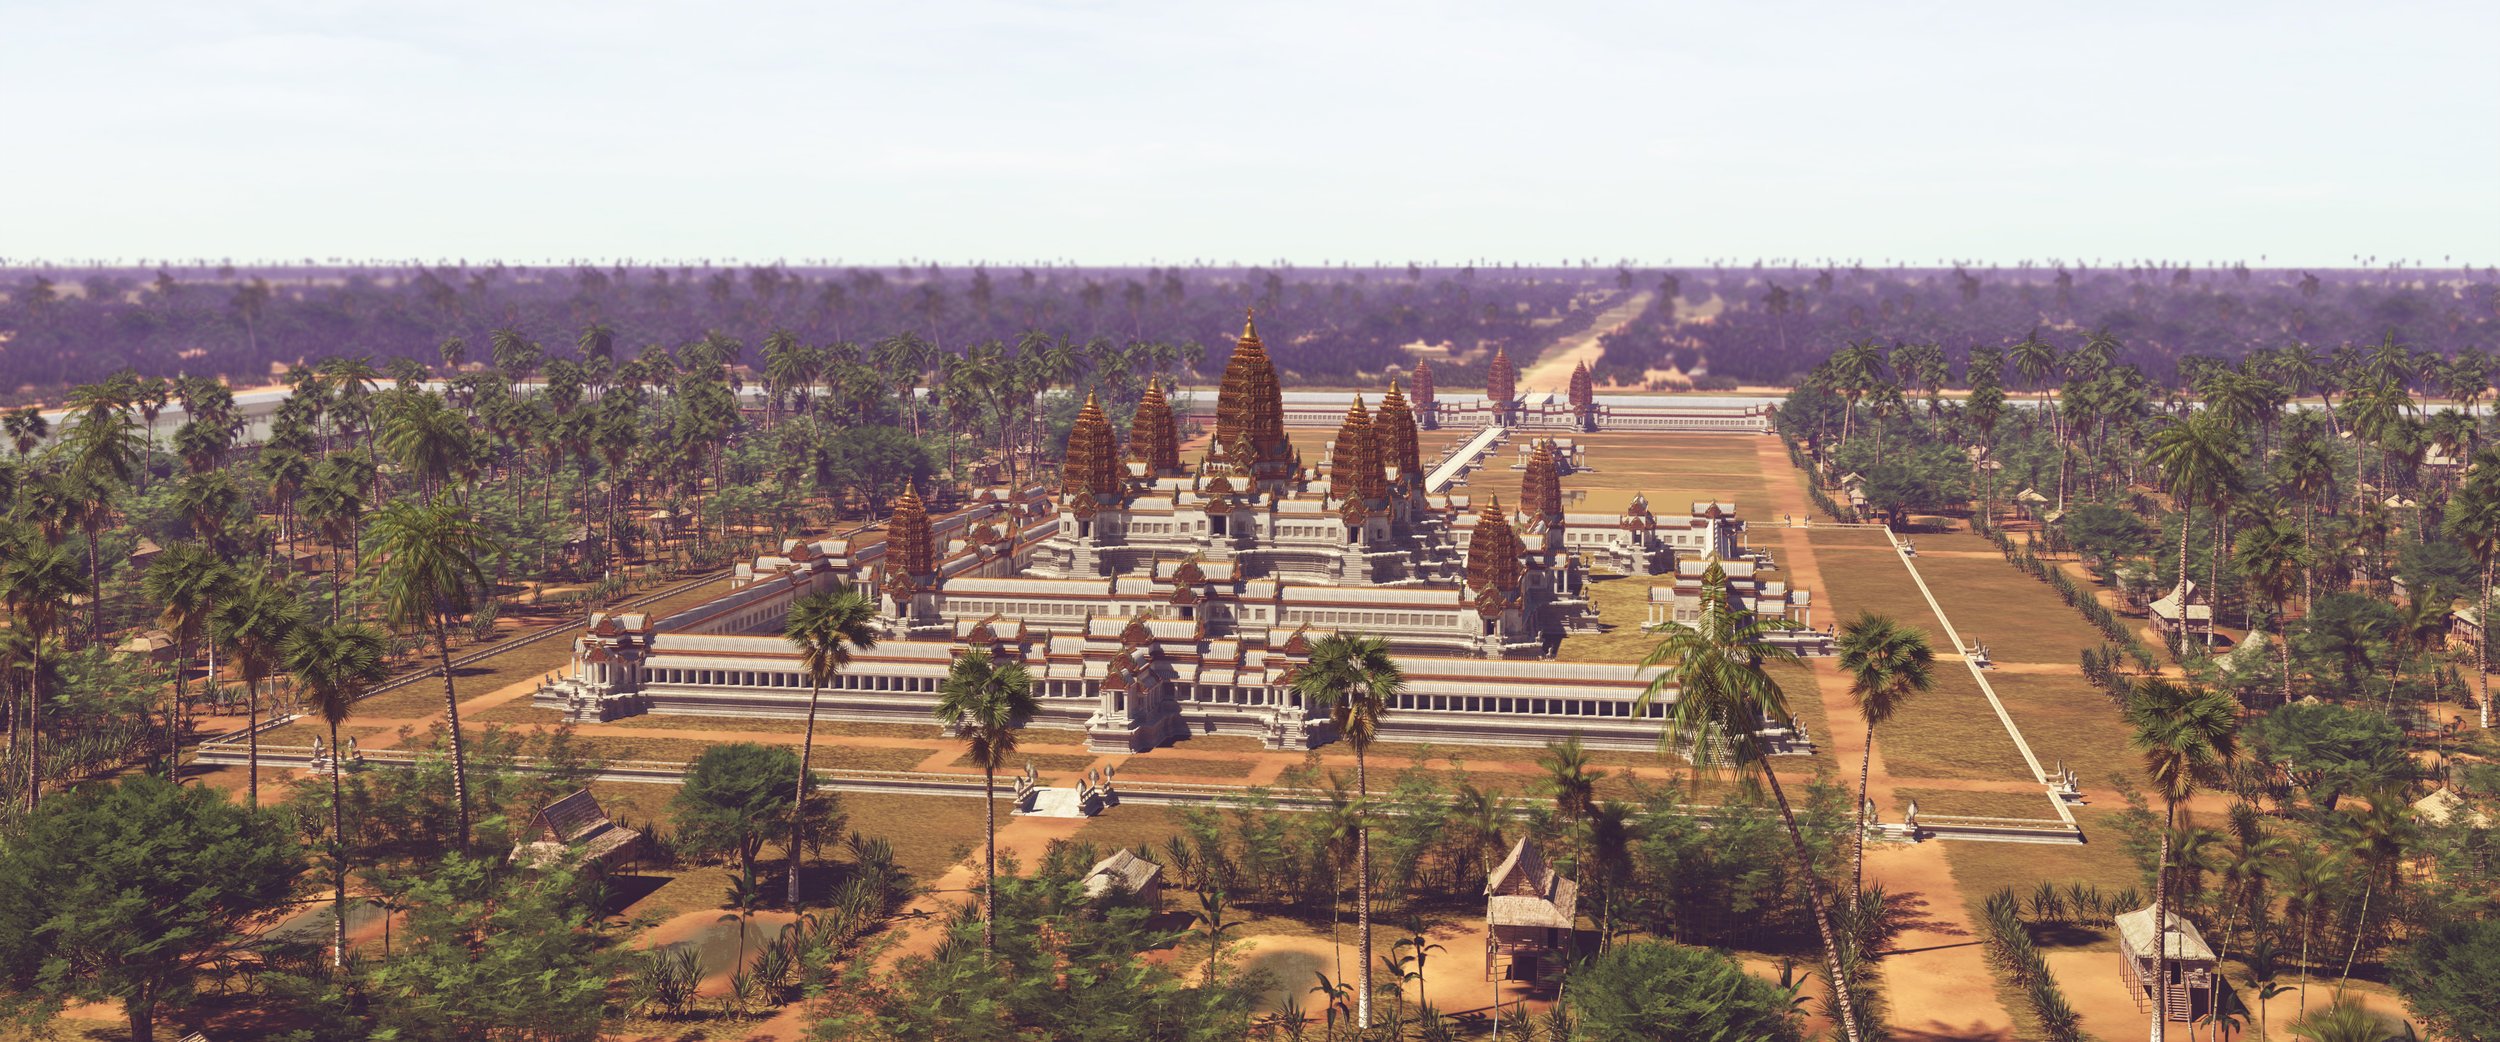 Angkor Wat enclosure, 12th century